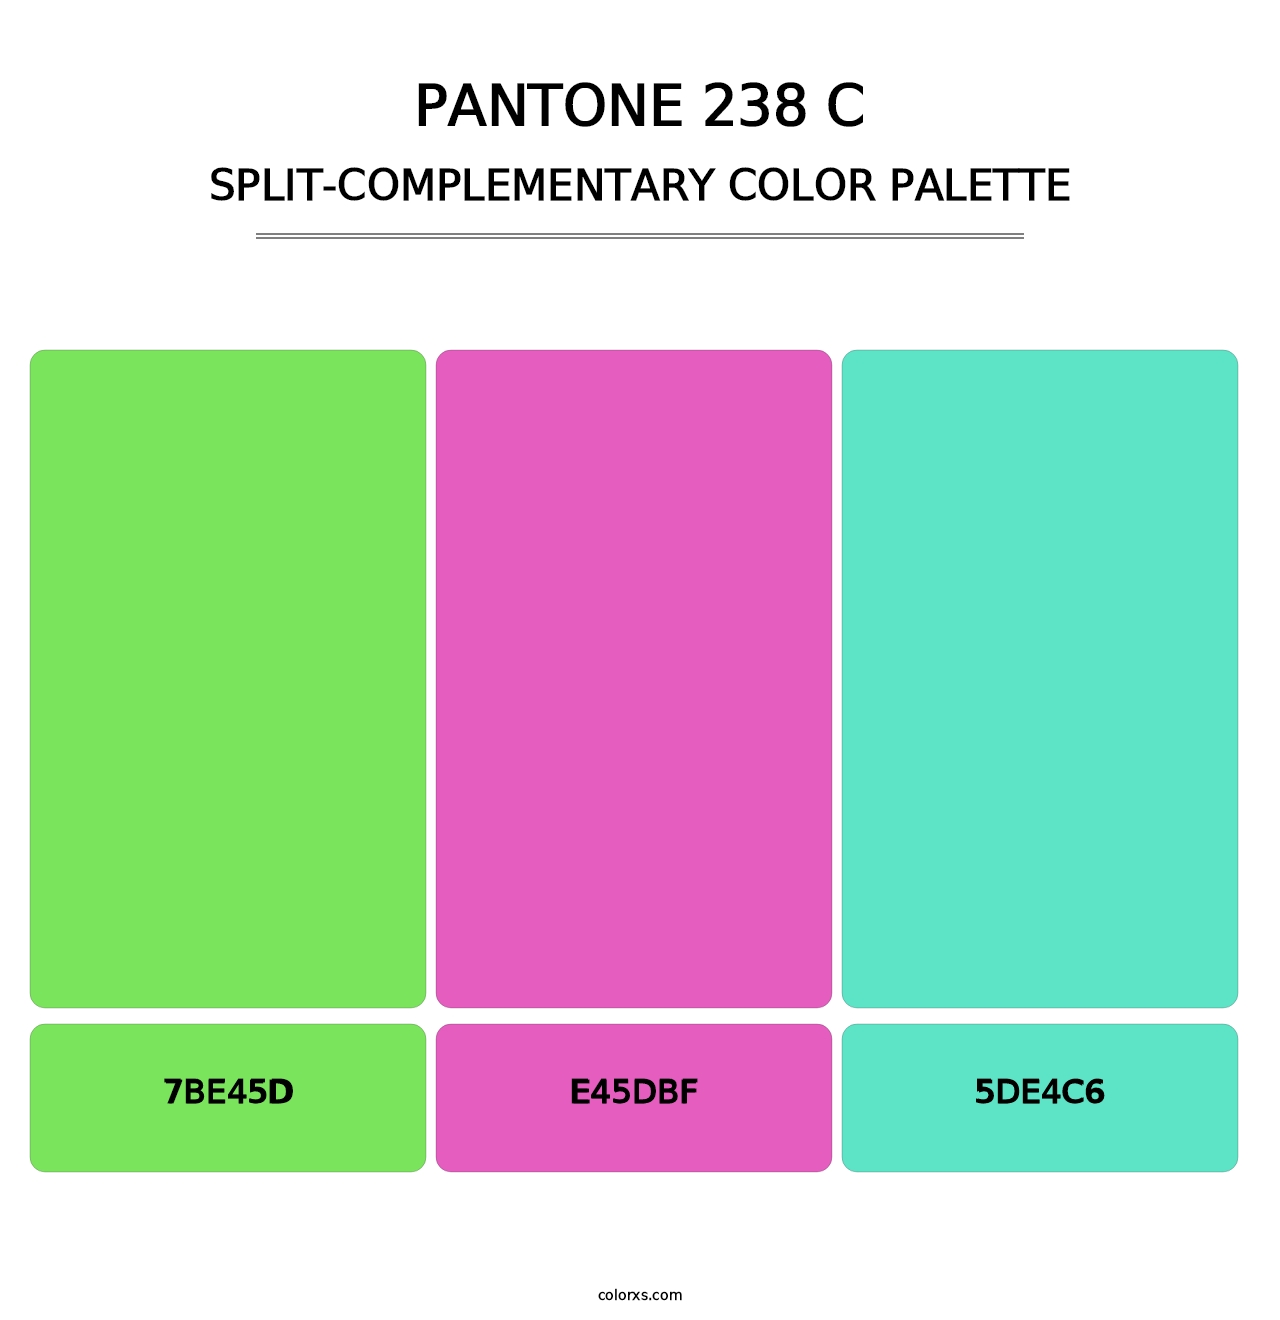 PANTONE 238 C - Split-Complementary Color Palette